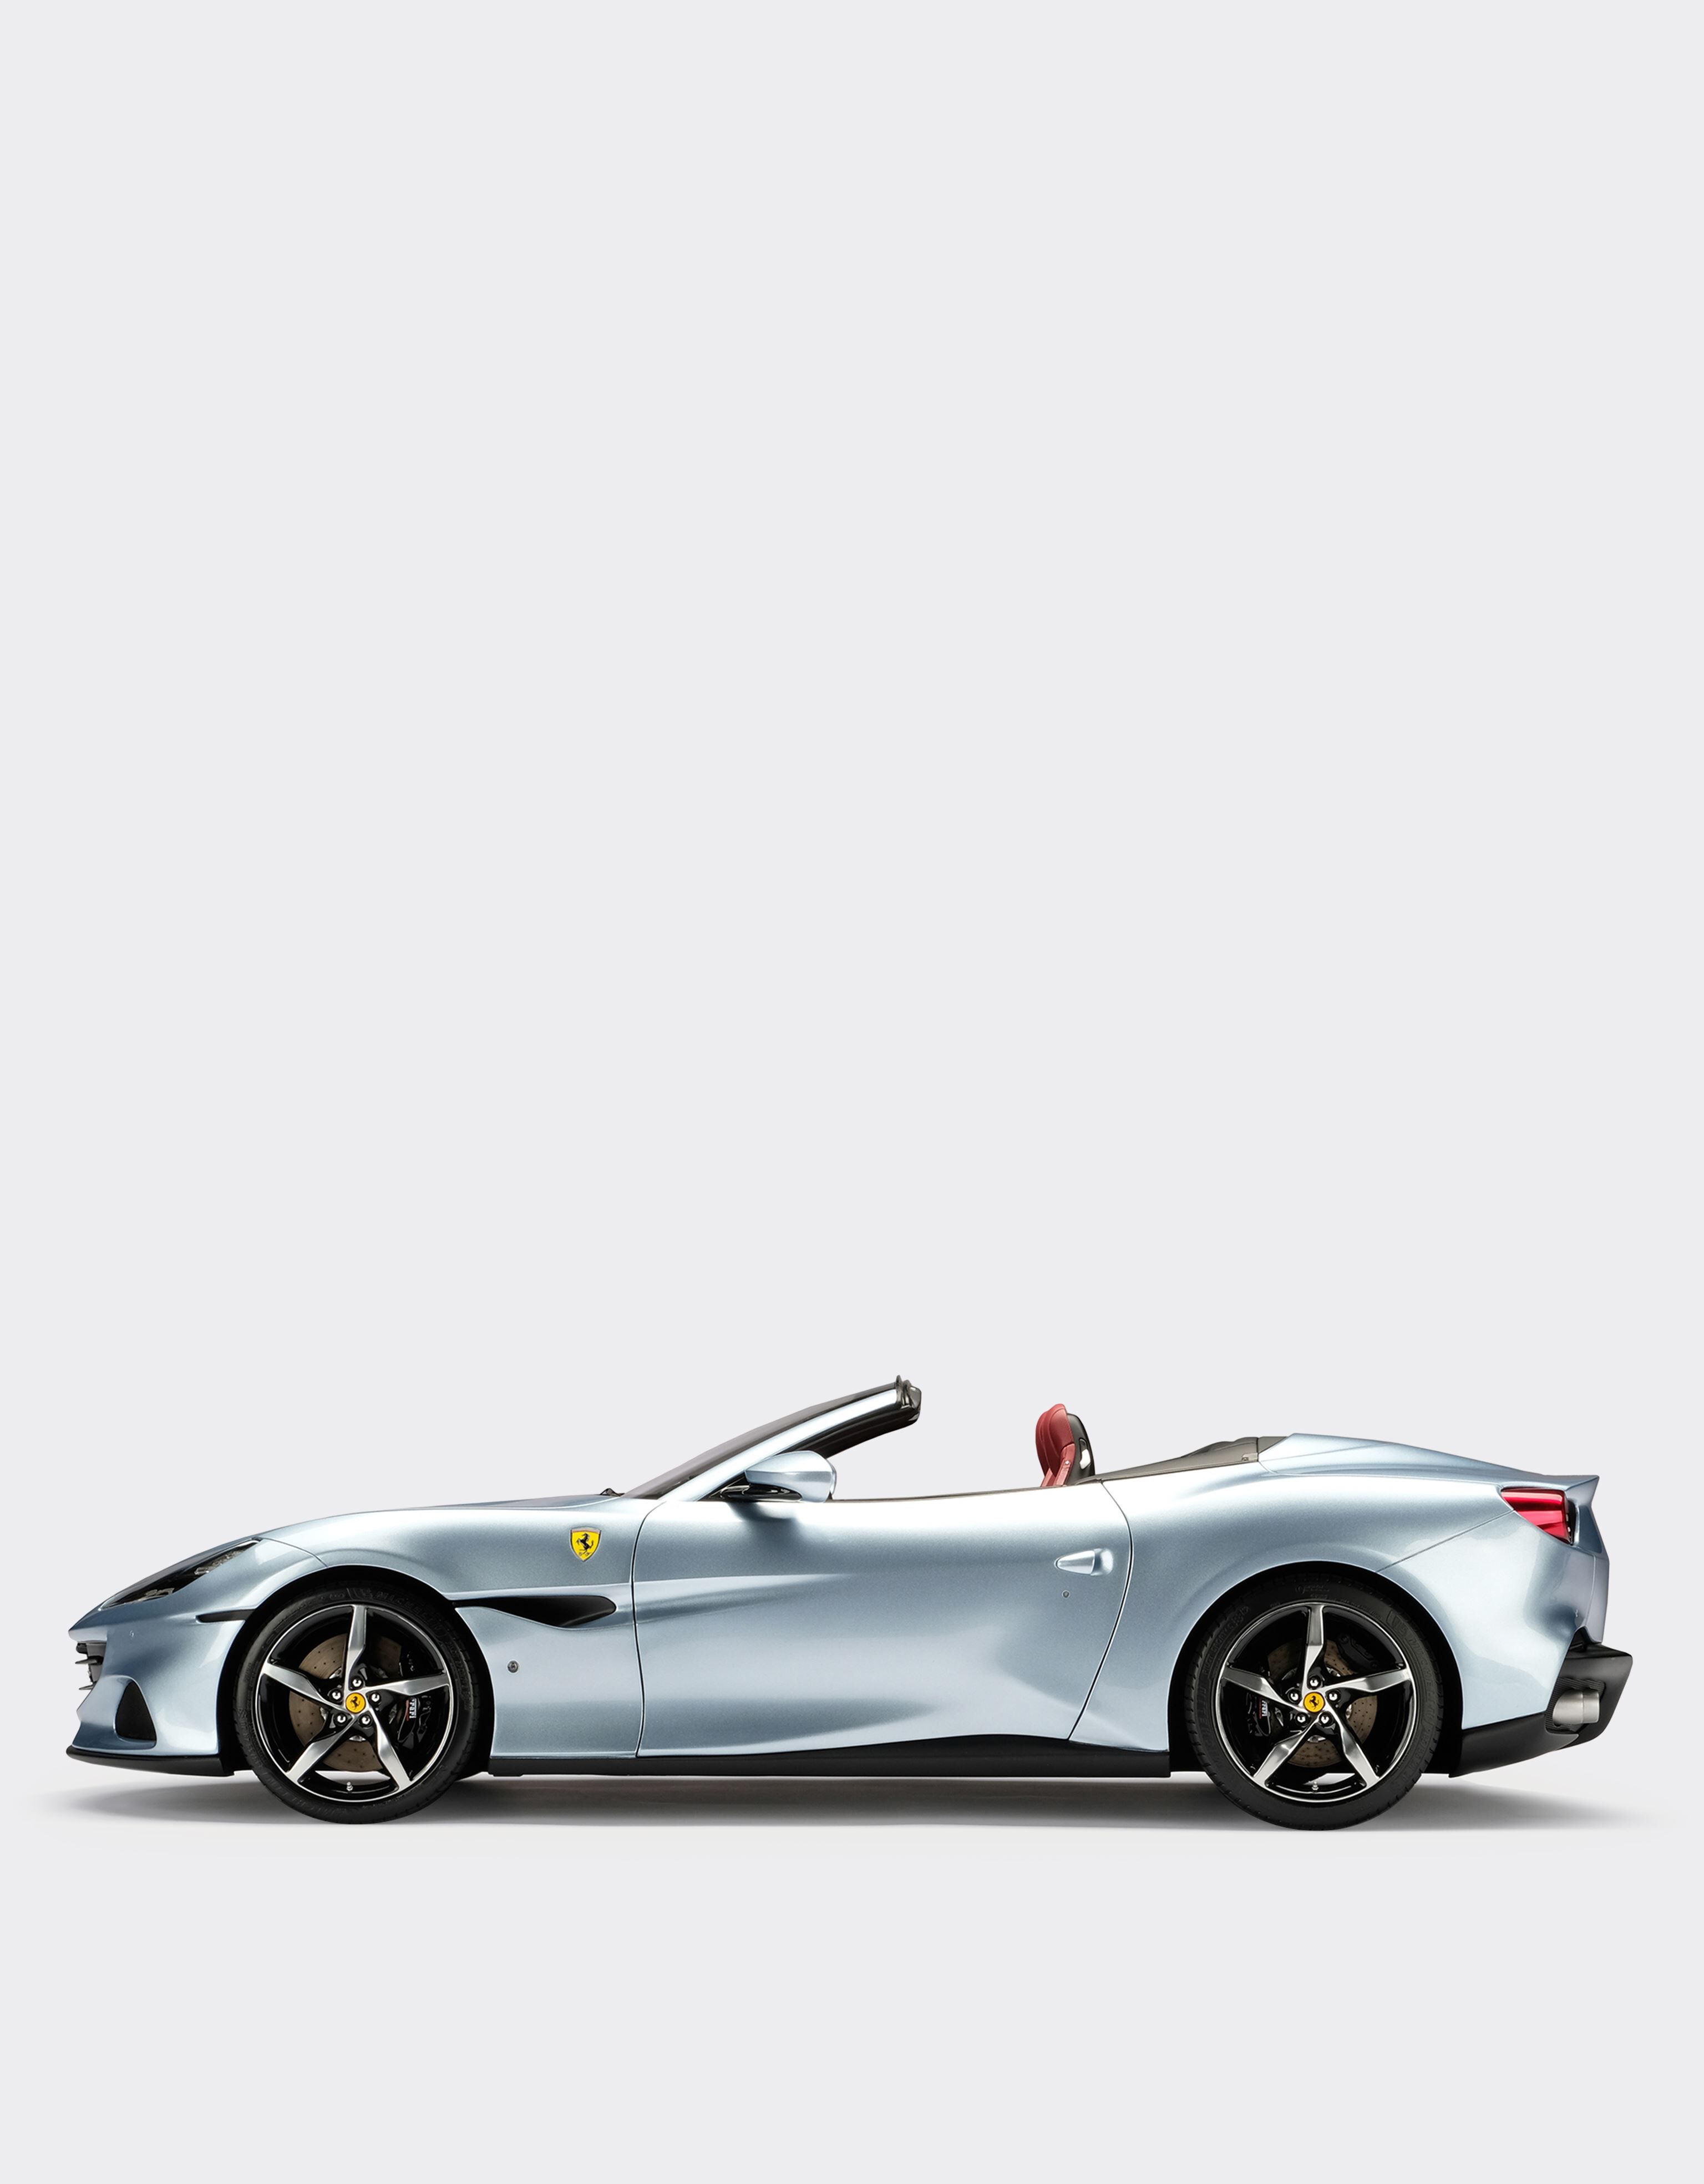 Ferrari 1:8 法拉利 Portofino M 模型车 苏格兰蓝色 F0575f